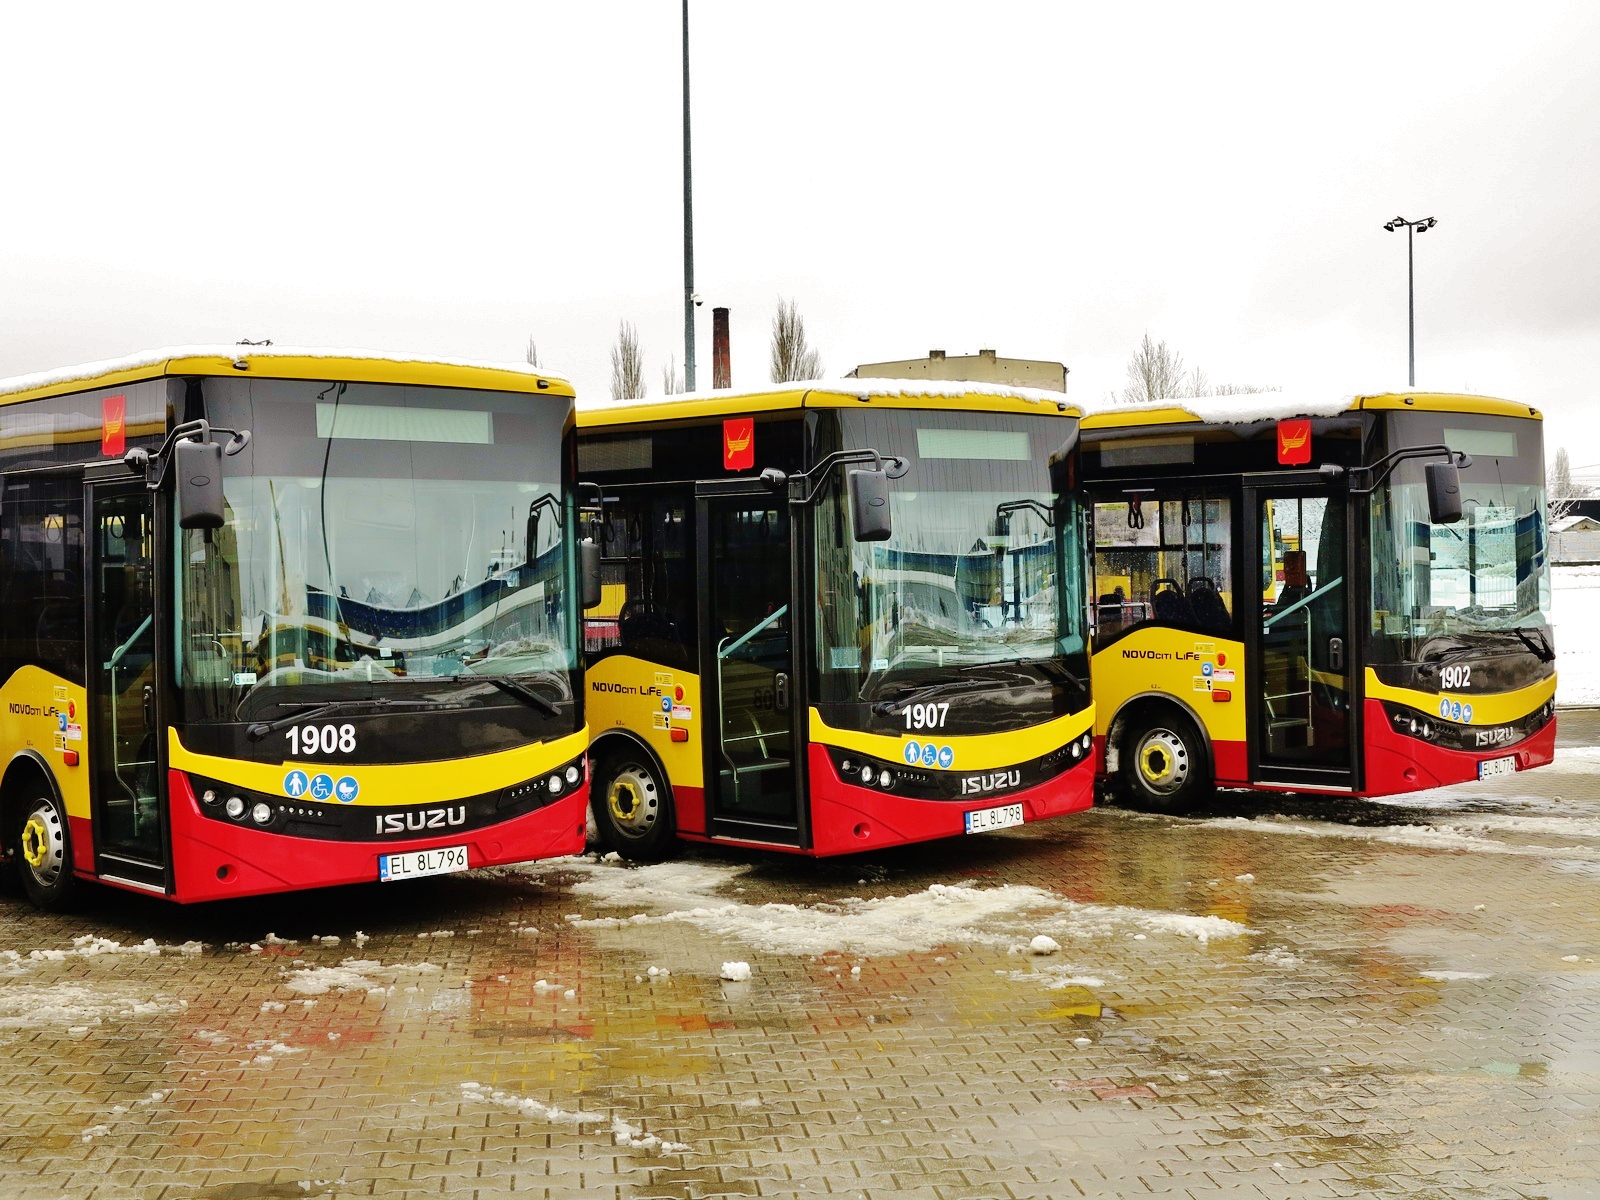 Flotila, 24 nových městských midibusů ISUZU Novociti Life pro polské město Lodž (foto:MPK)